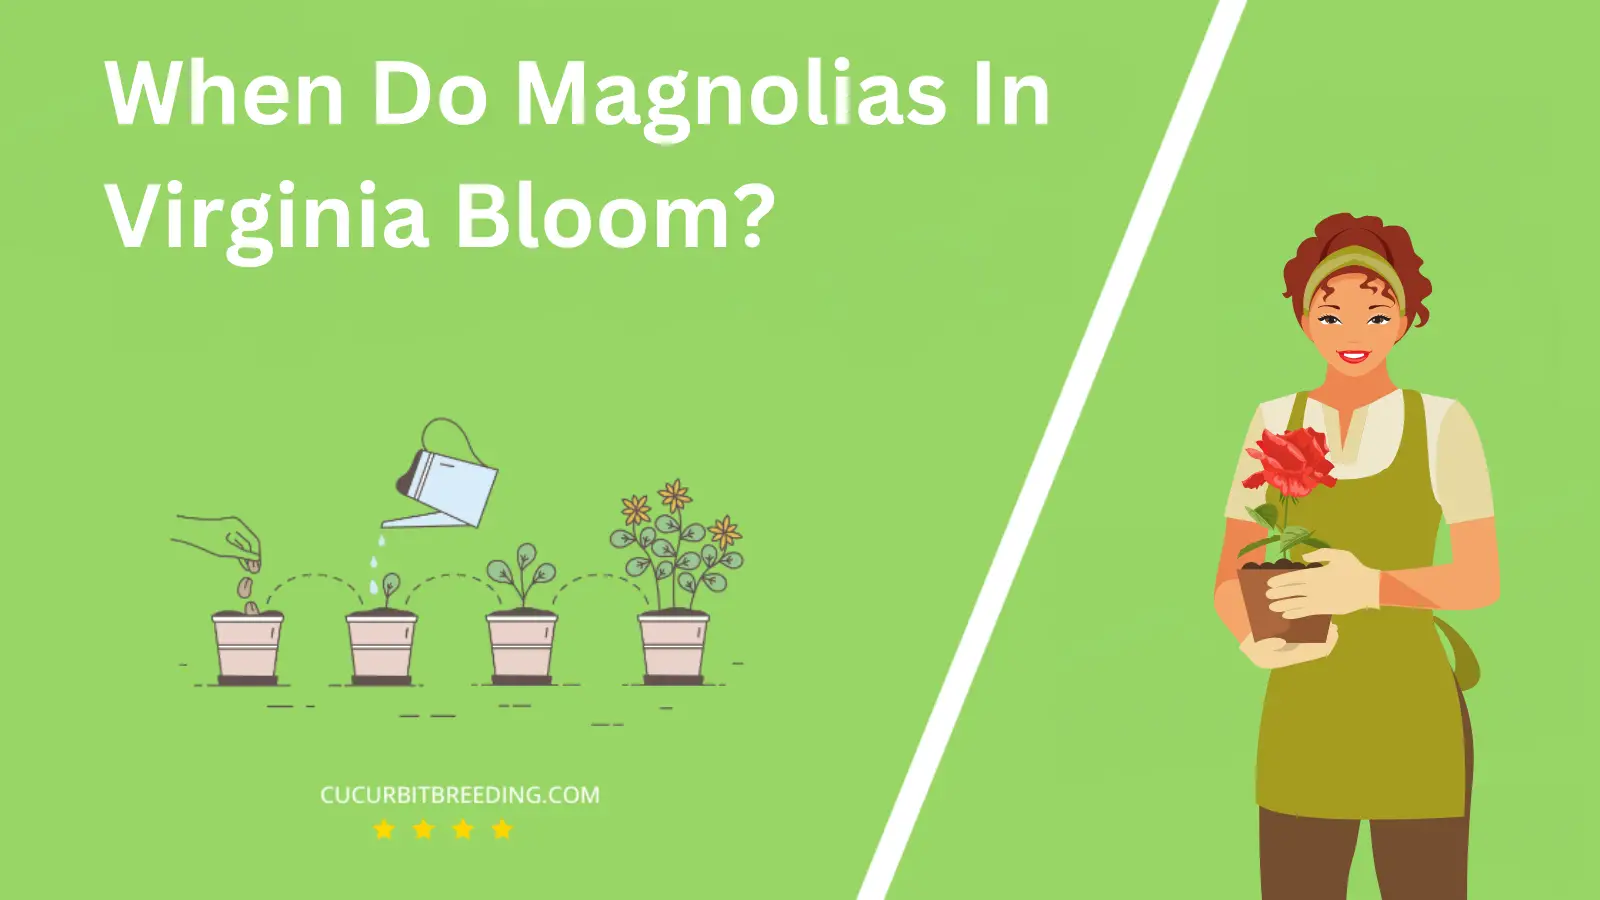 When Do Magnolias In Virginia Bloom?